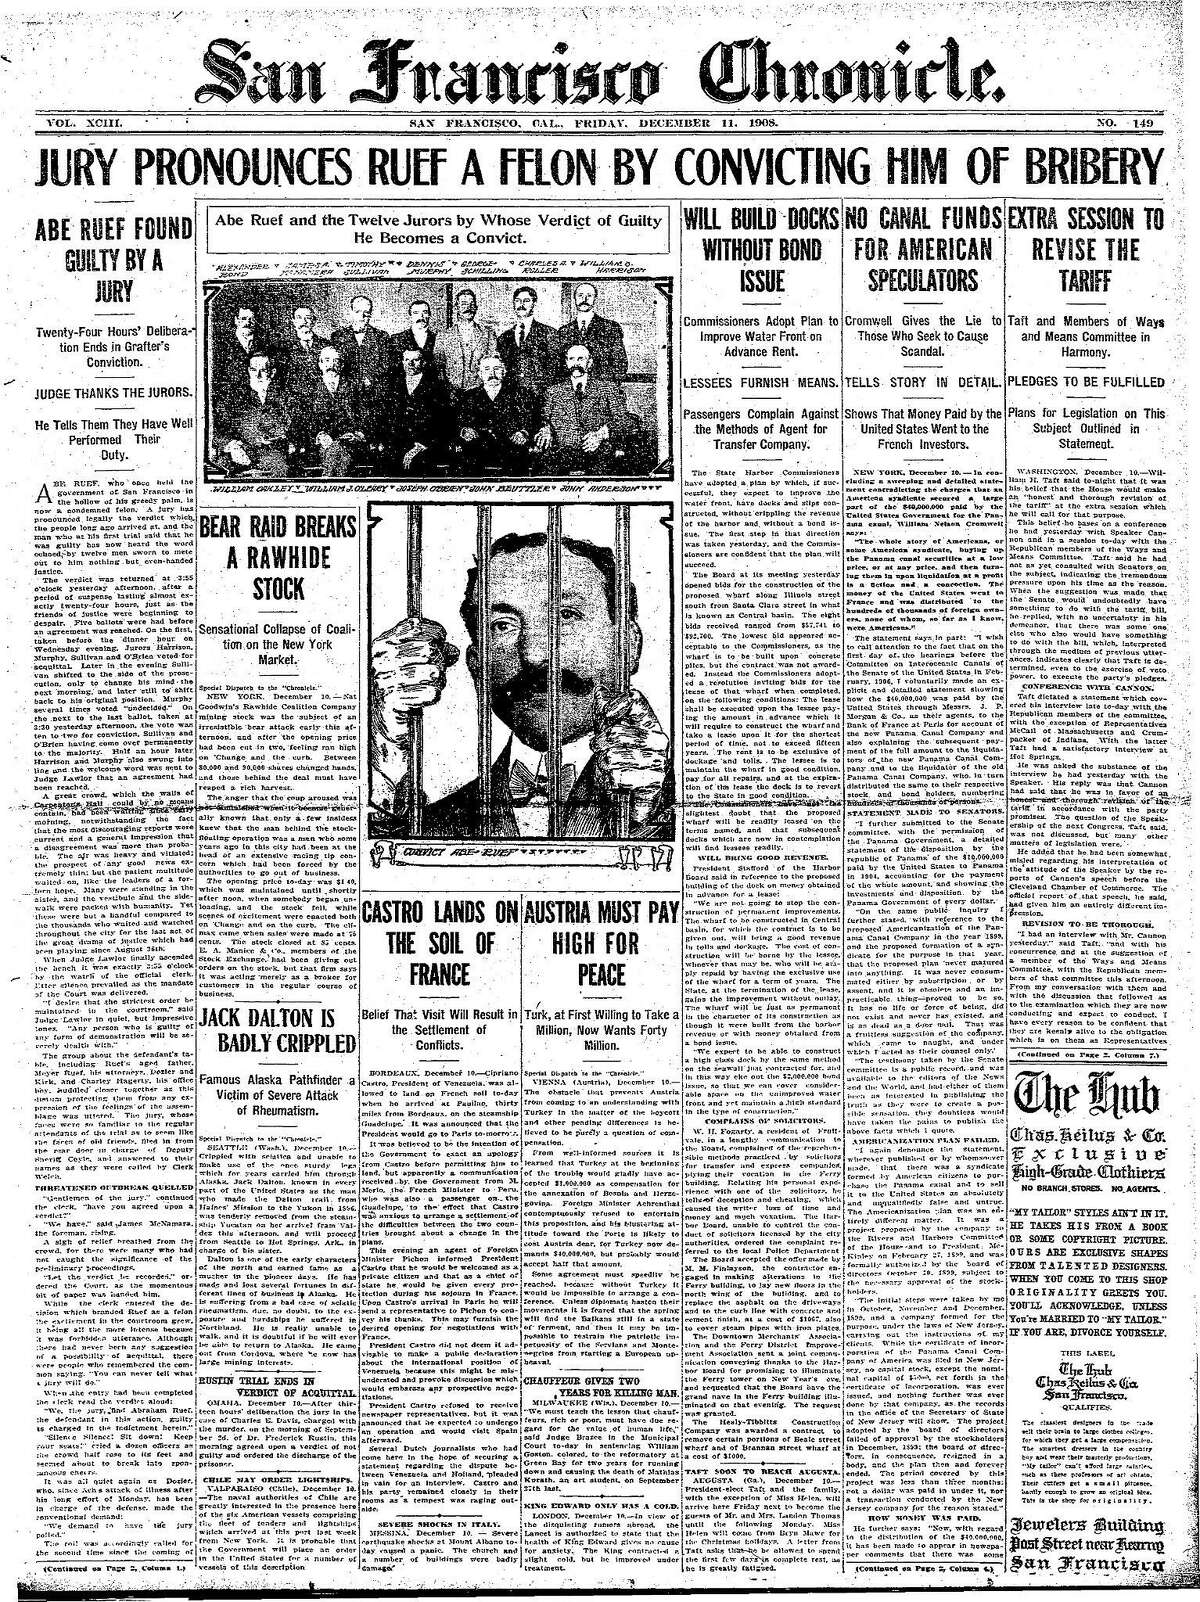 历史纪事报头版1908年12月11日旧金山权力掮客安倍·鲁夫因行贿被判有罪